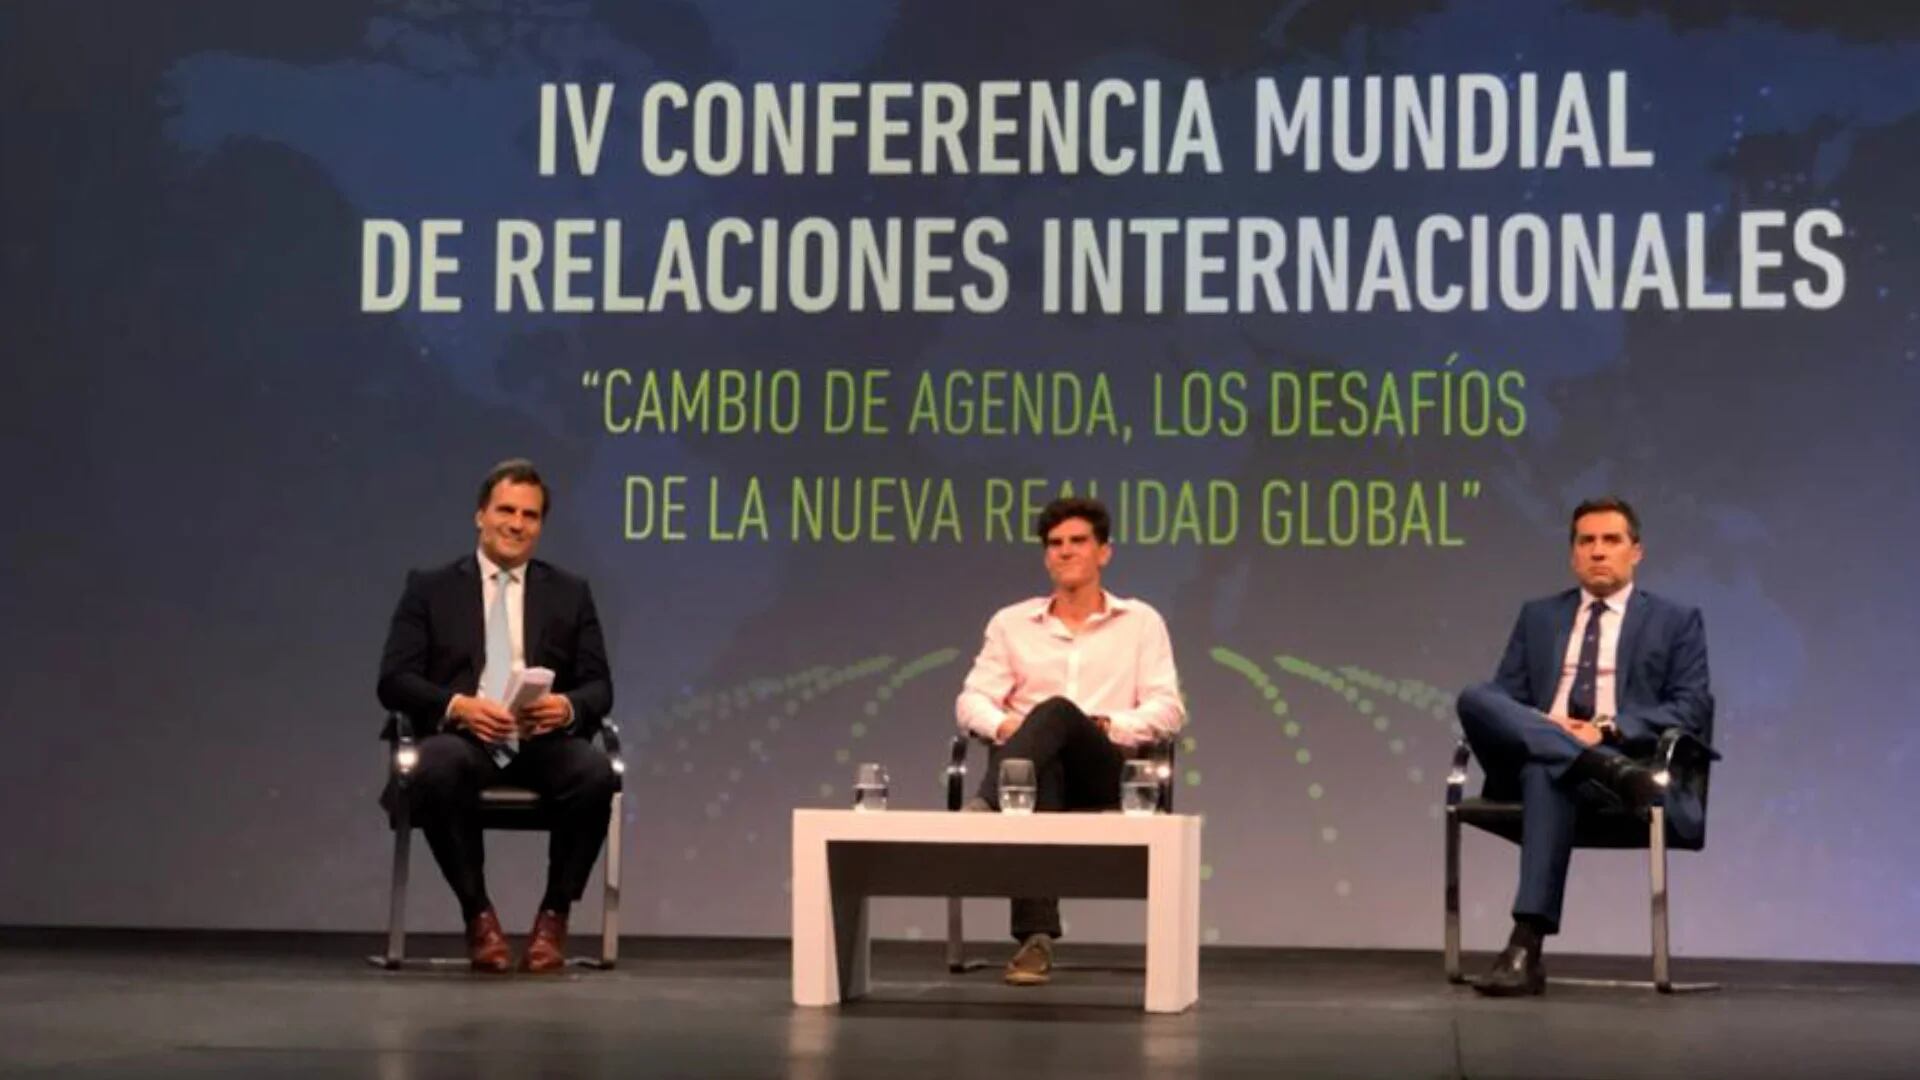 La Conferencia Mundial de Relaciones Internacionales fue organizada por el CEERI